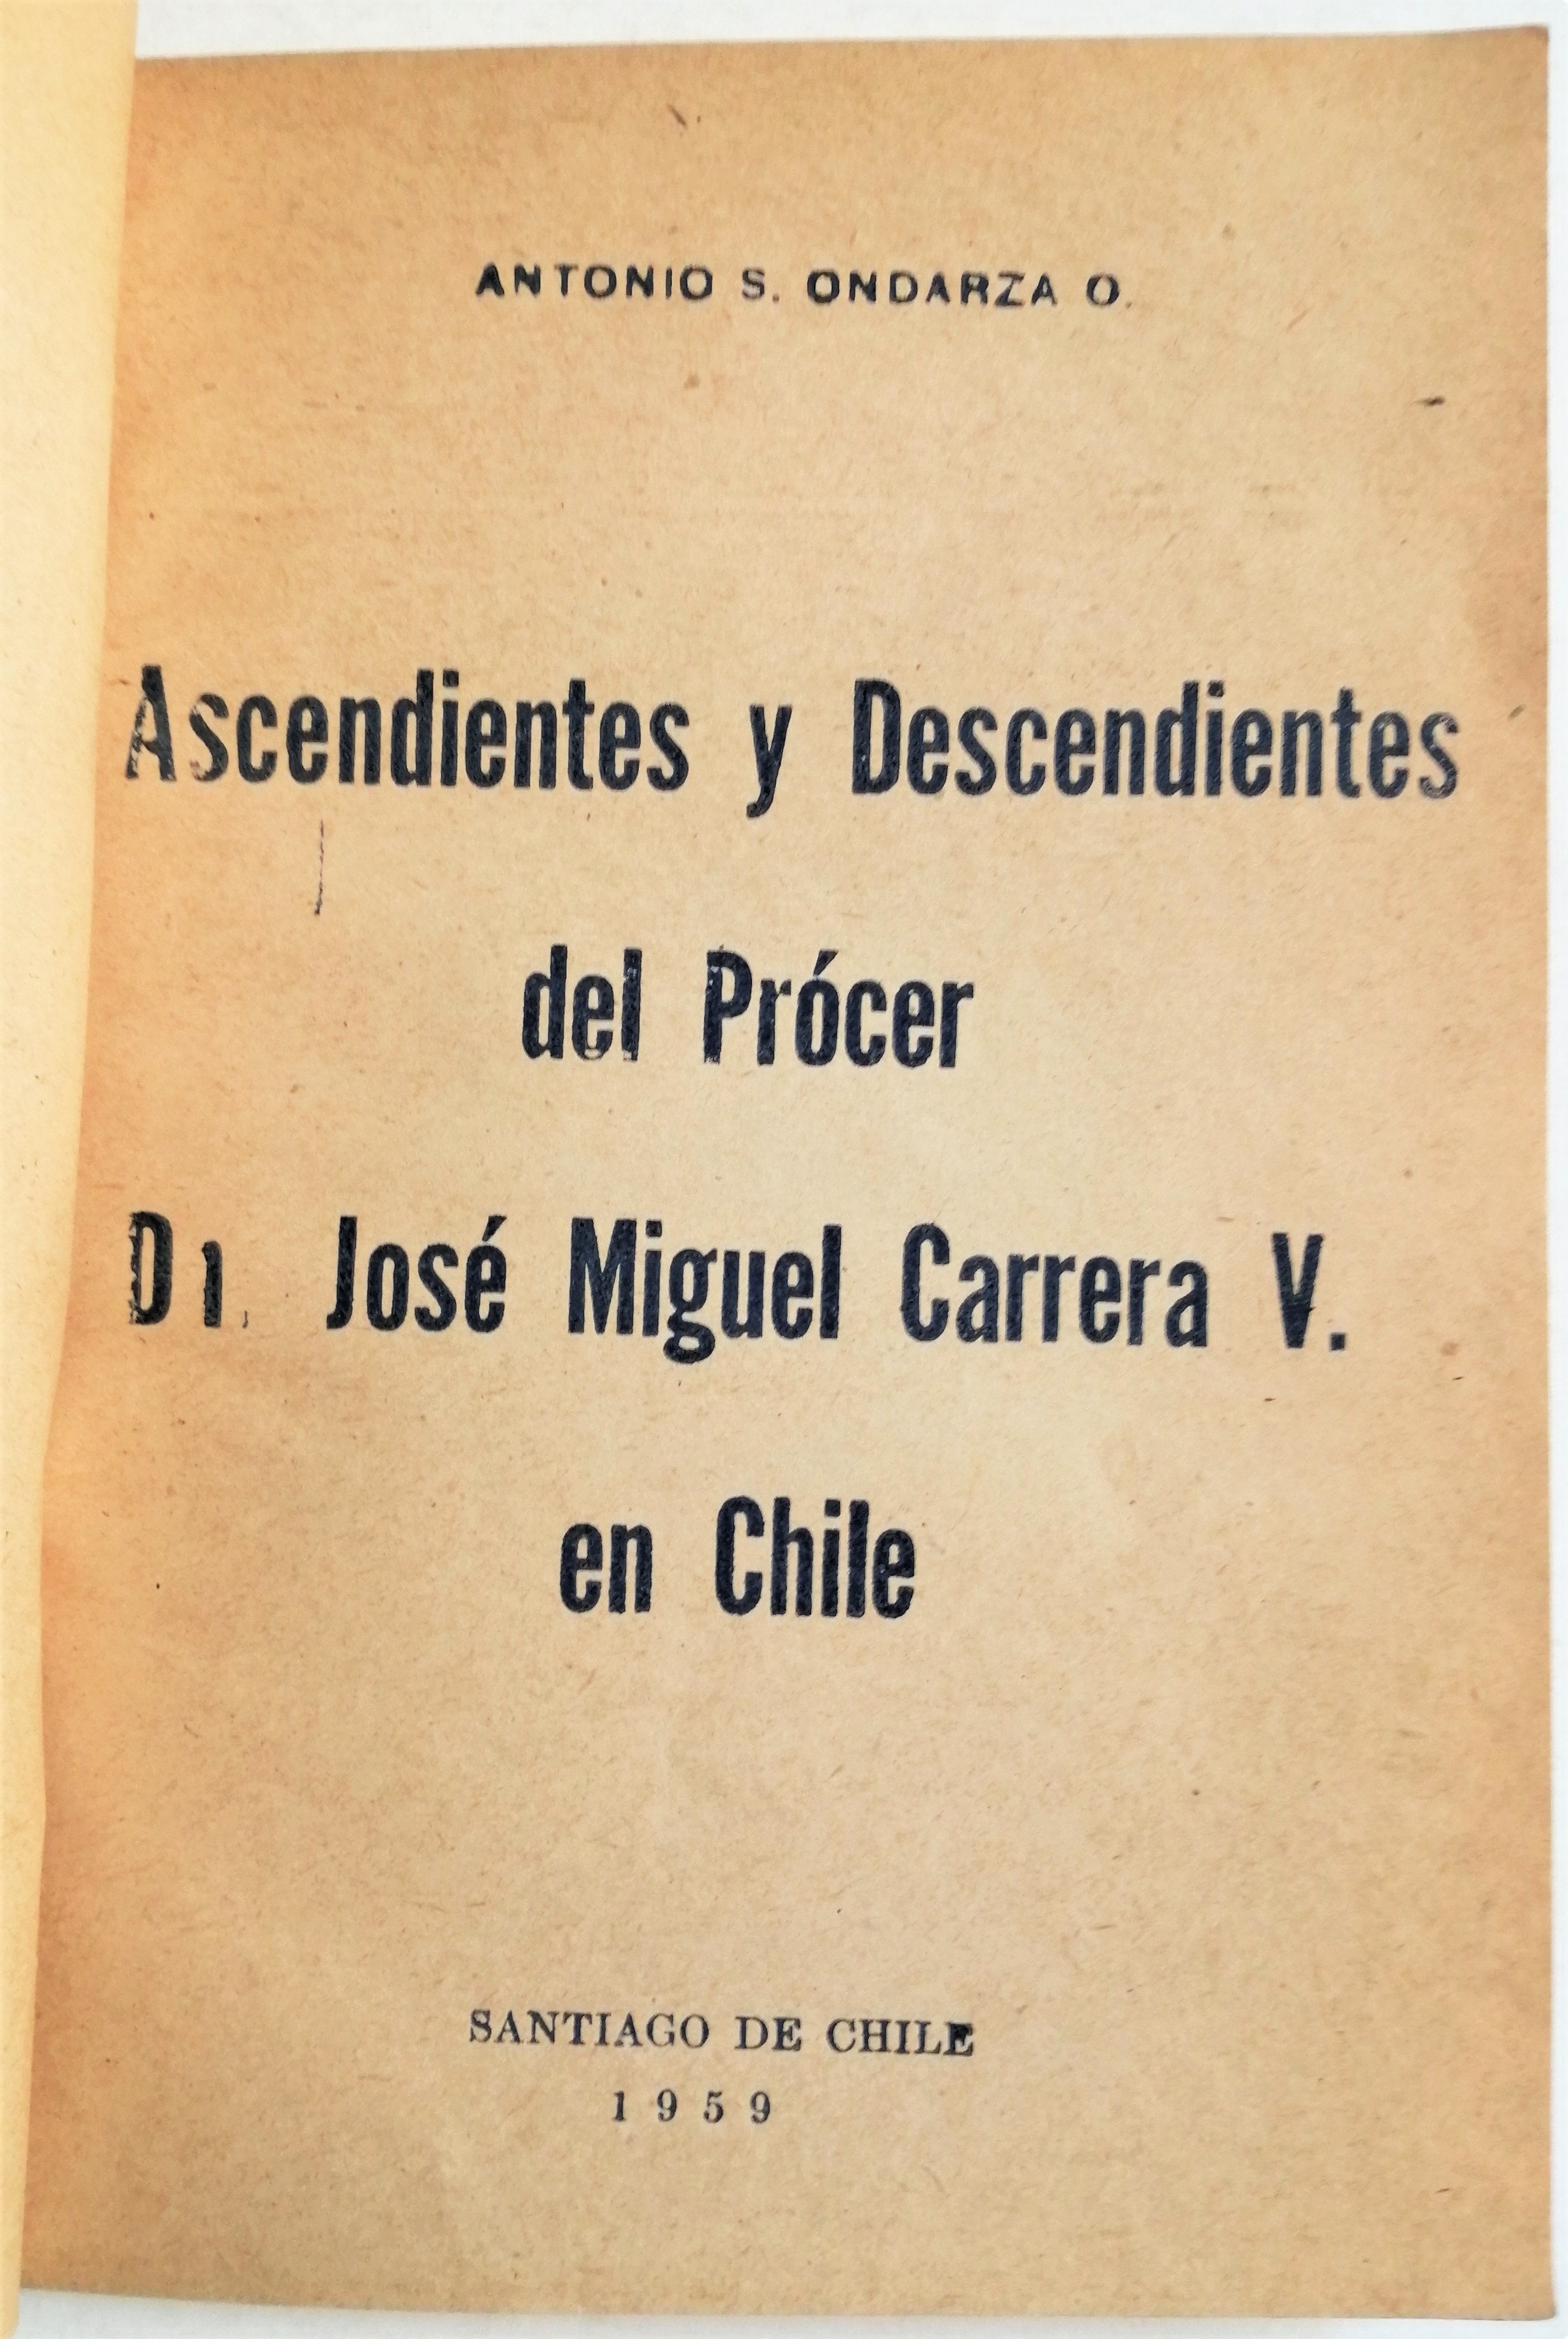 Antonio S. Ondarza O. - Ascendientes y descendientes del prócer José Miguel Carrera V. en Chile